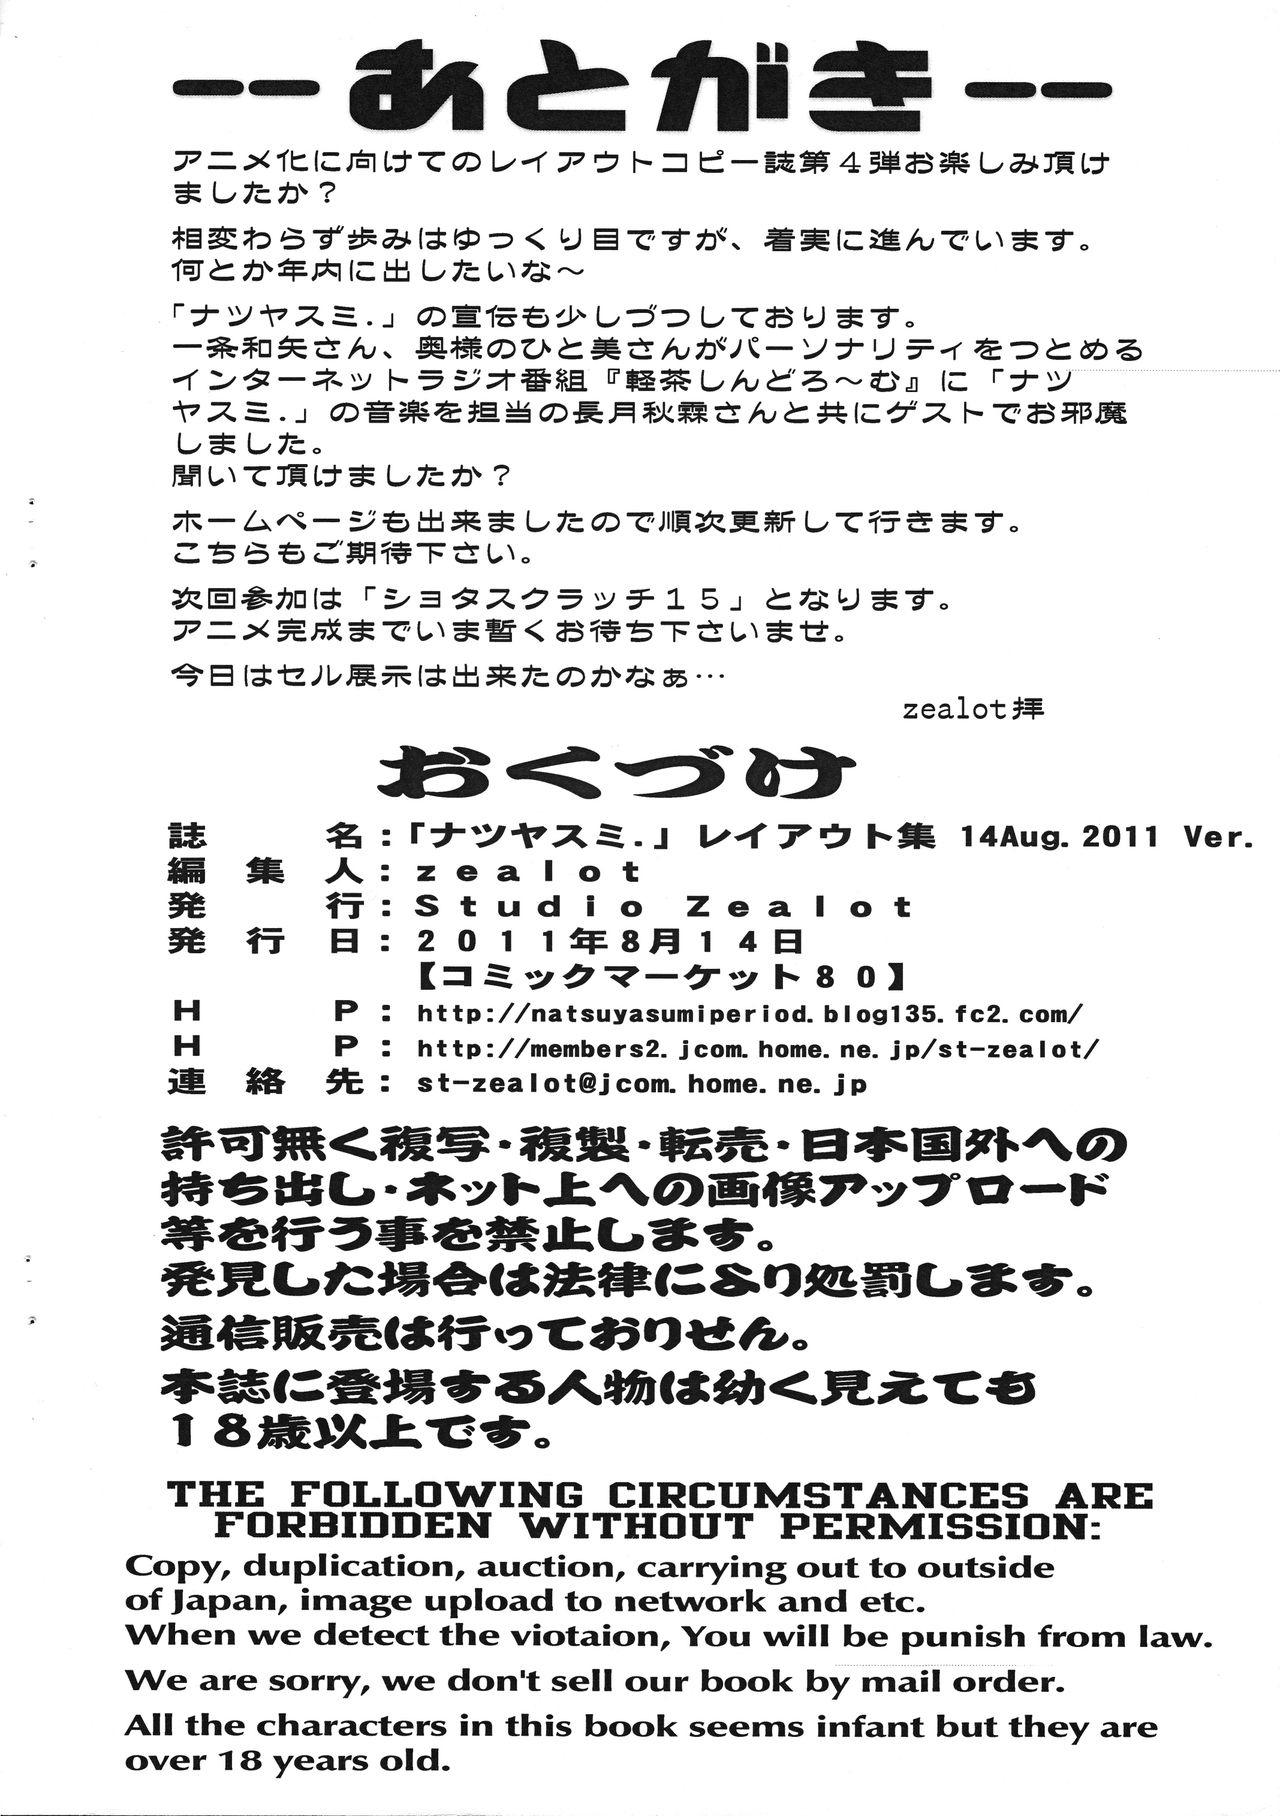 (C80) [Studio Zealot (Po-Ju)] Natsuyasumi Period Layout Shuu 14 Aug. 2011 Ver. (original) 10